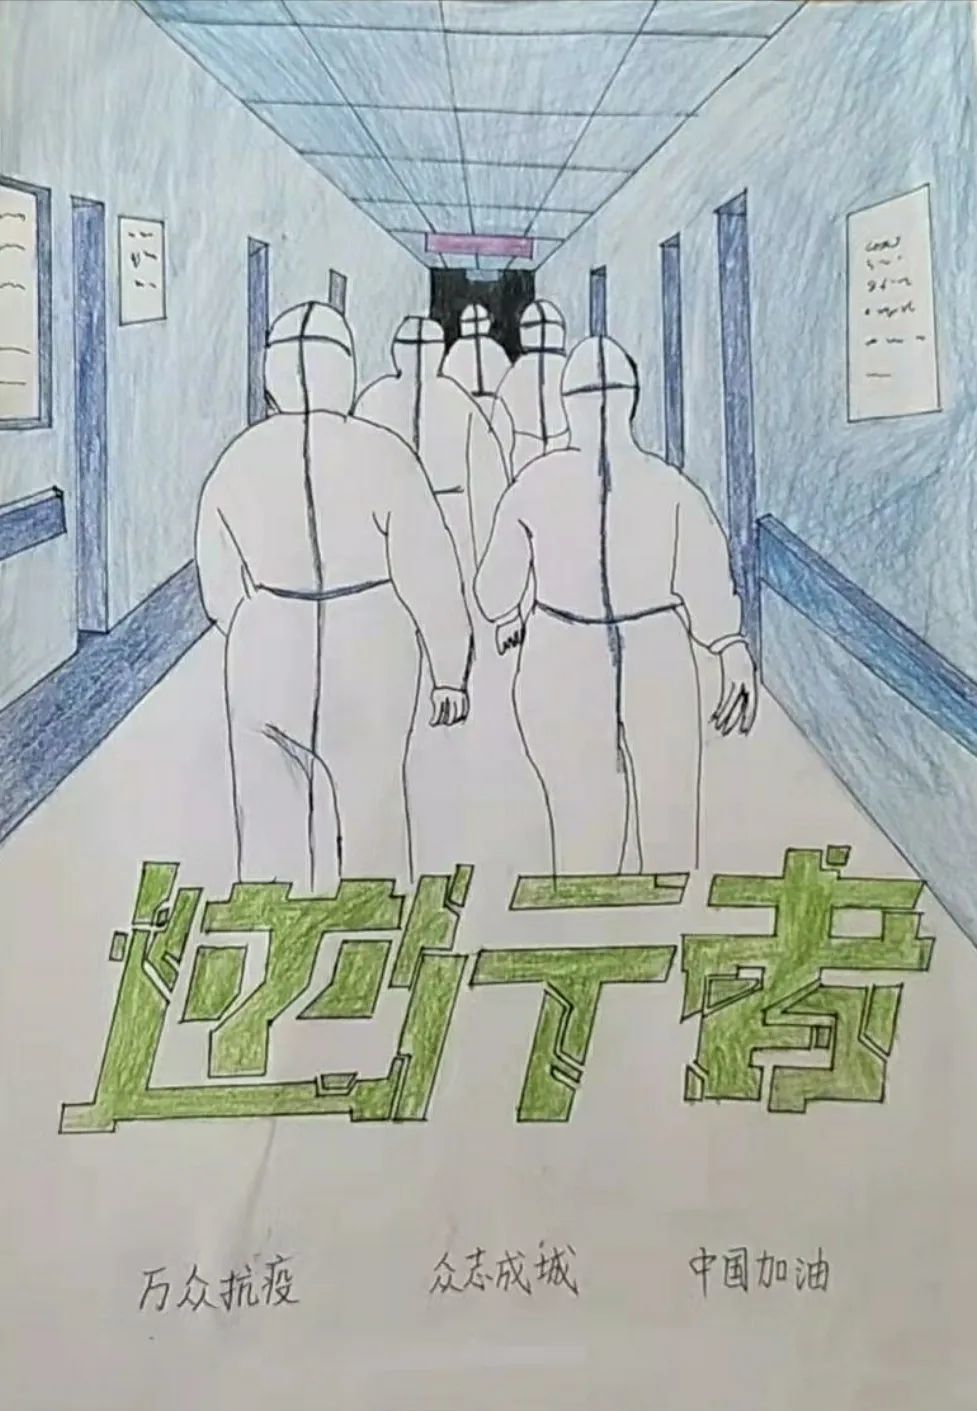 病毒肺炎疫情之际,青岛六十七中的学子们用画笔凝聚起了一股万众一心